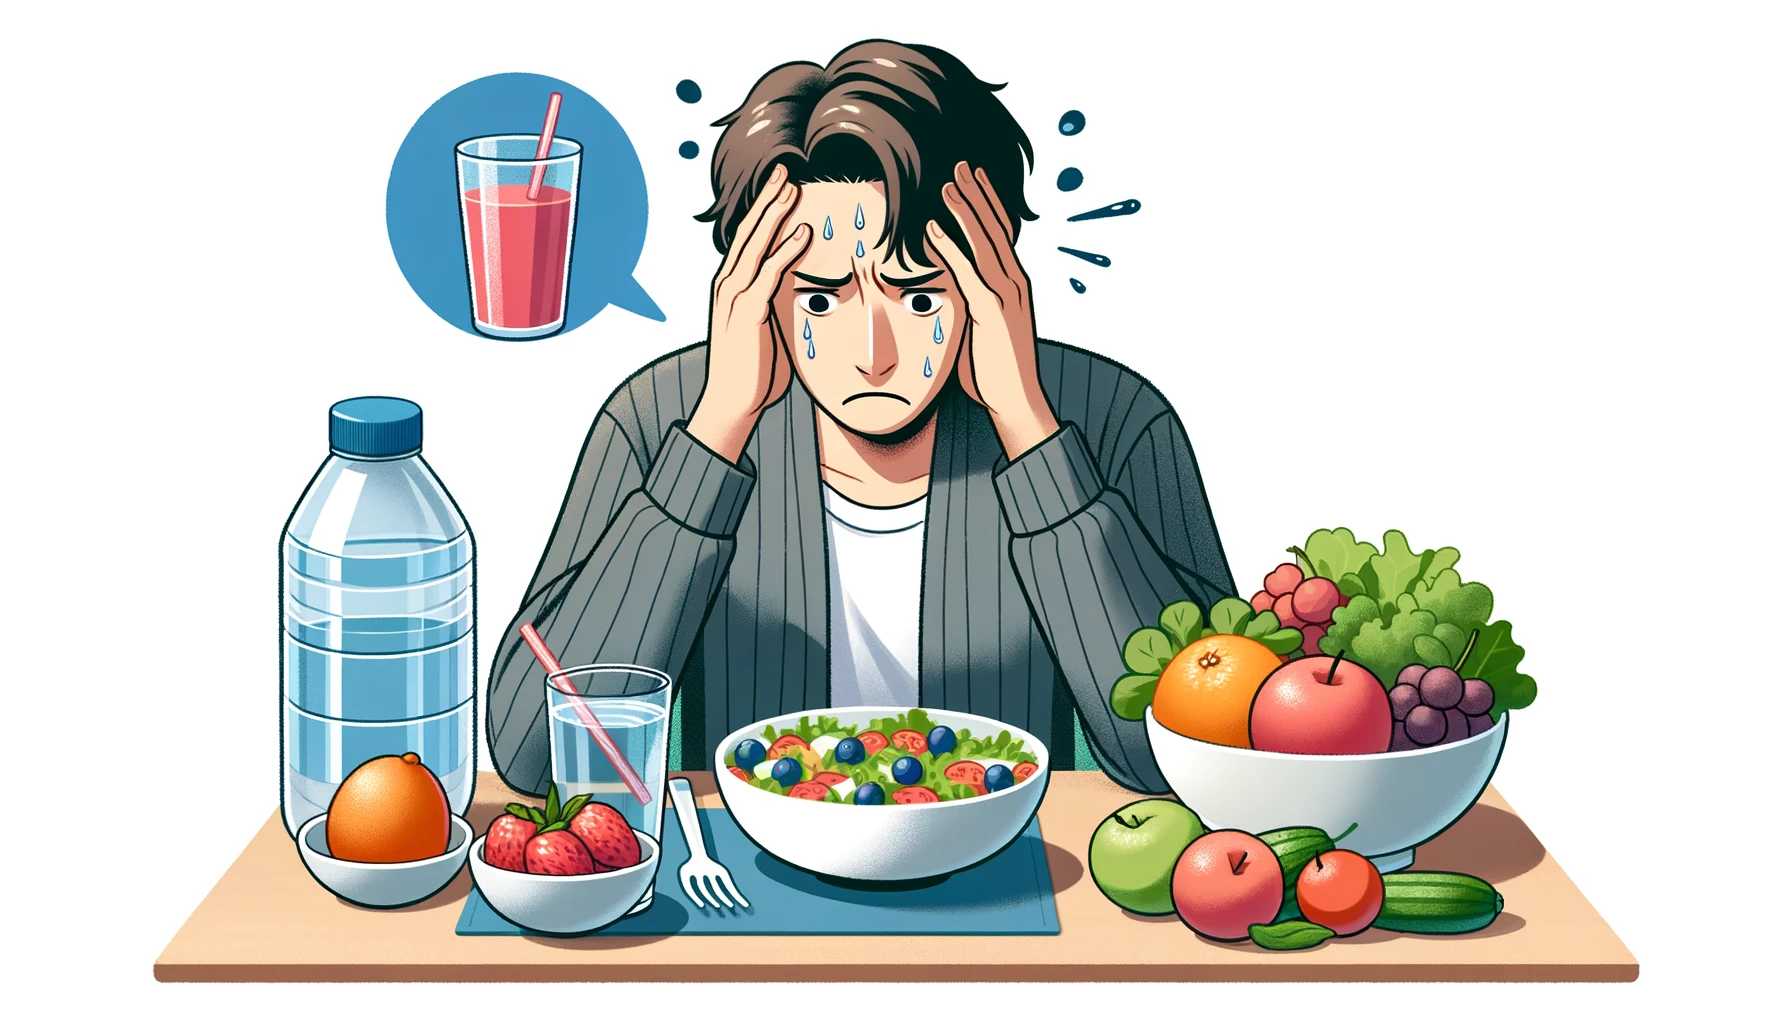 Immagine che mostra come una dieta povera e sbilanciata può avere un impatto negativo sul nostro umore.